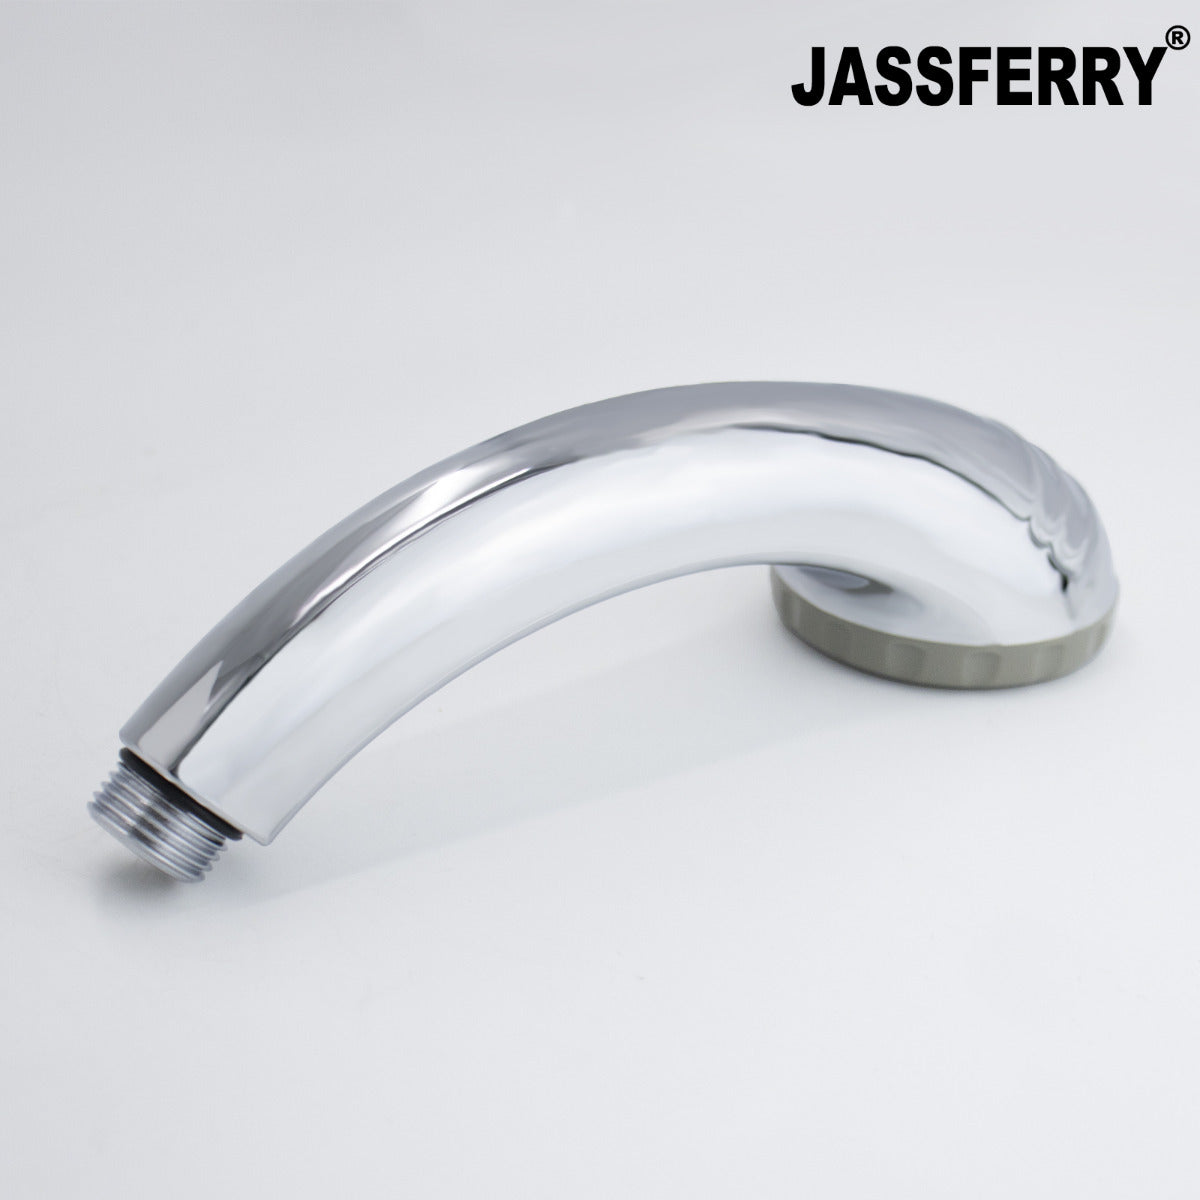 JassferryJASSFERRY Shower Massage Spray Heads Handset Hand Holder Chrome PolishShower Heads